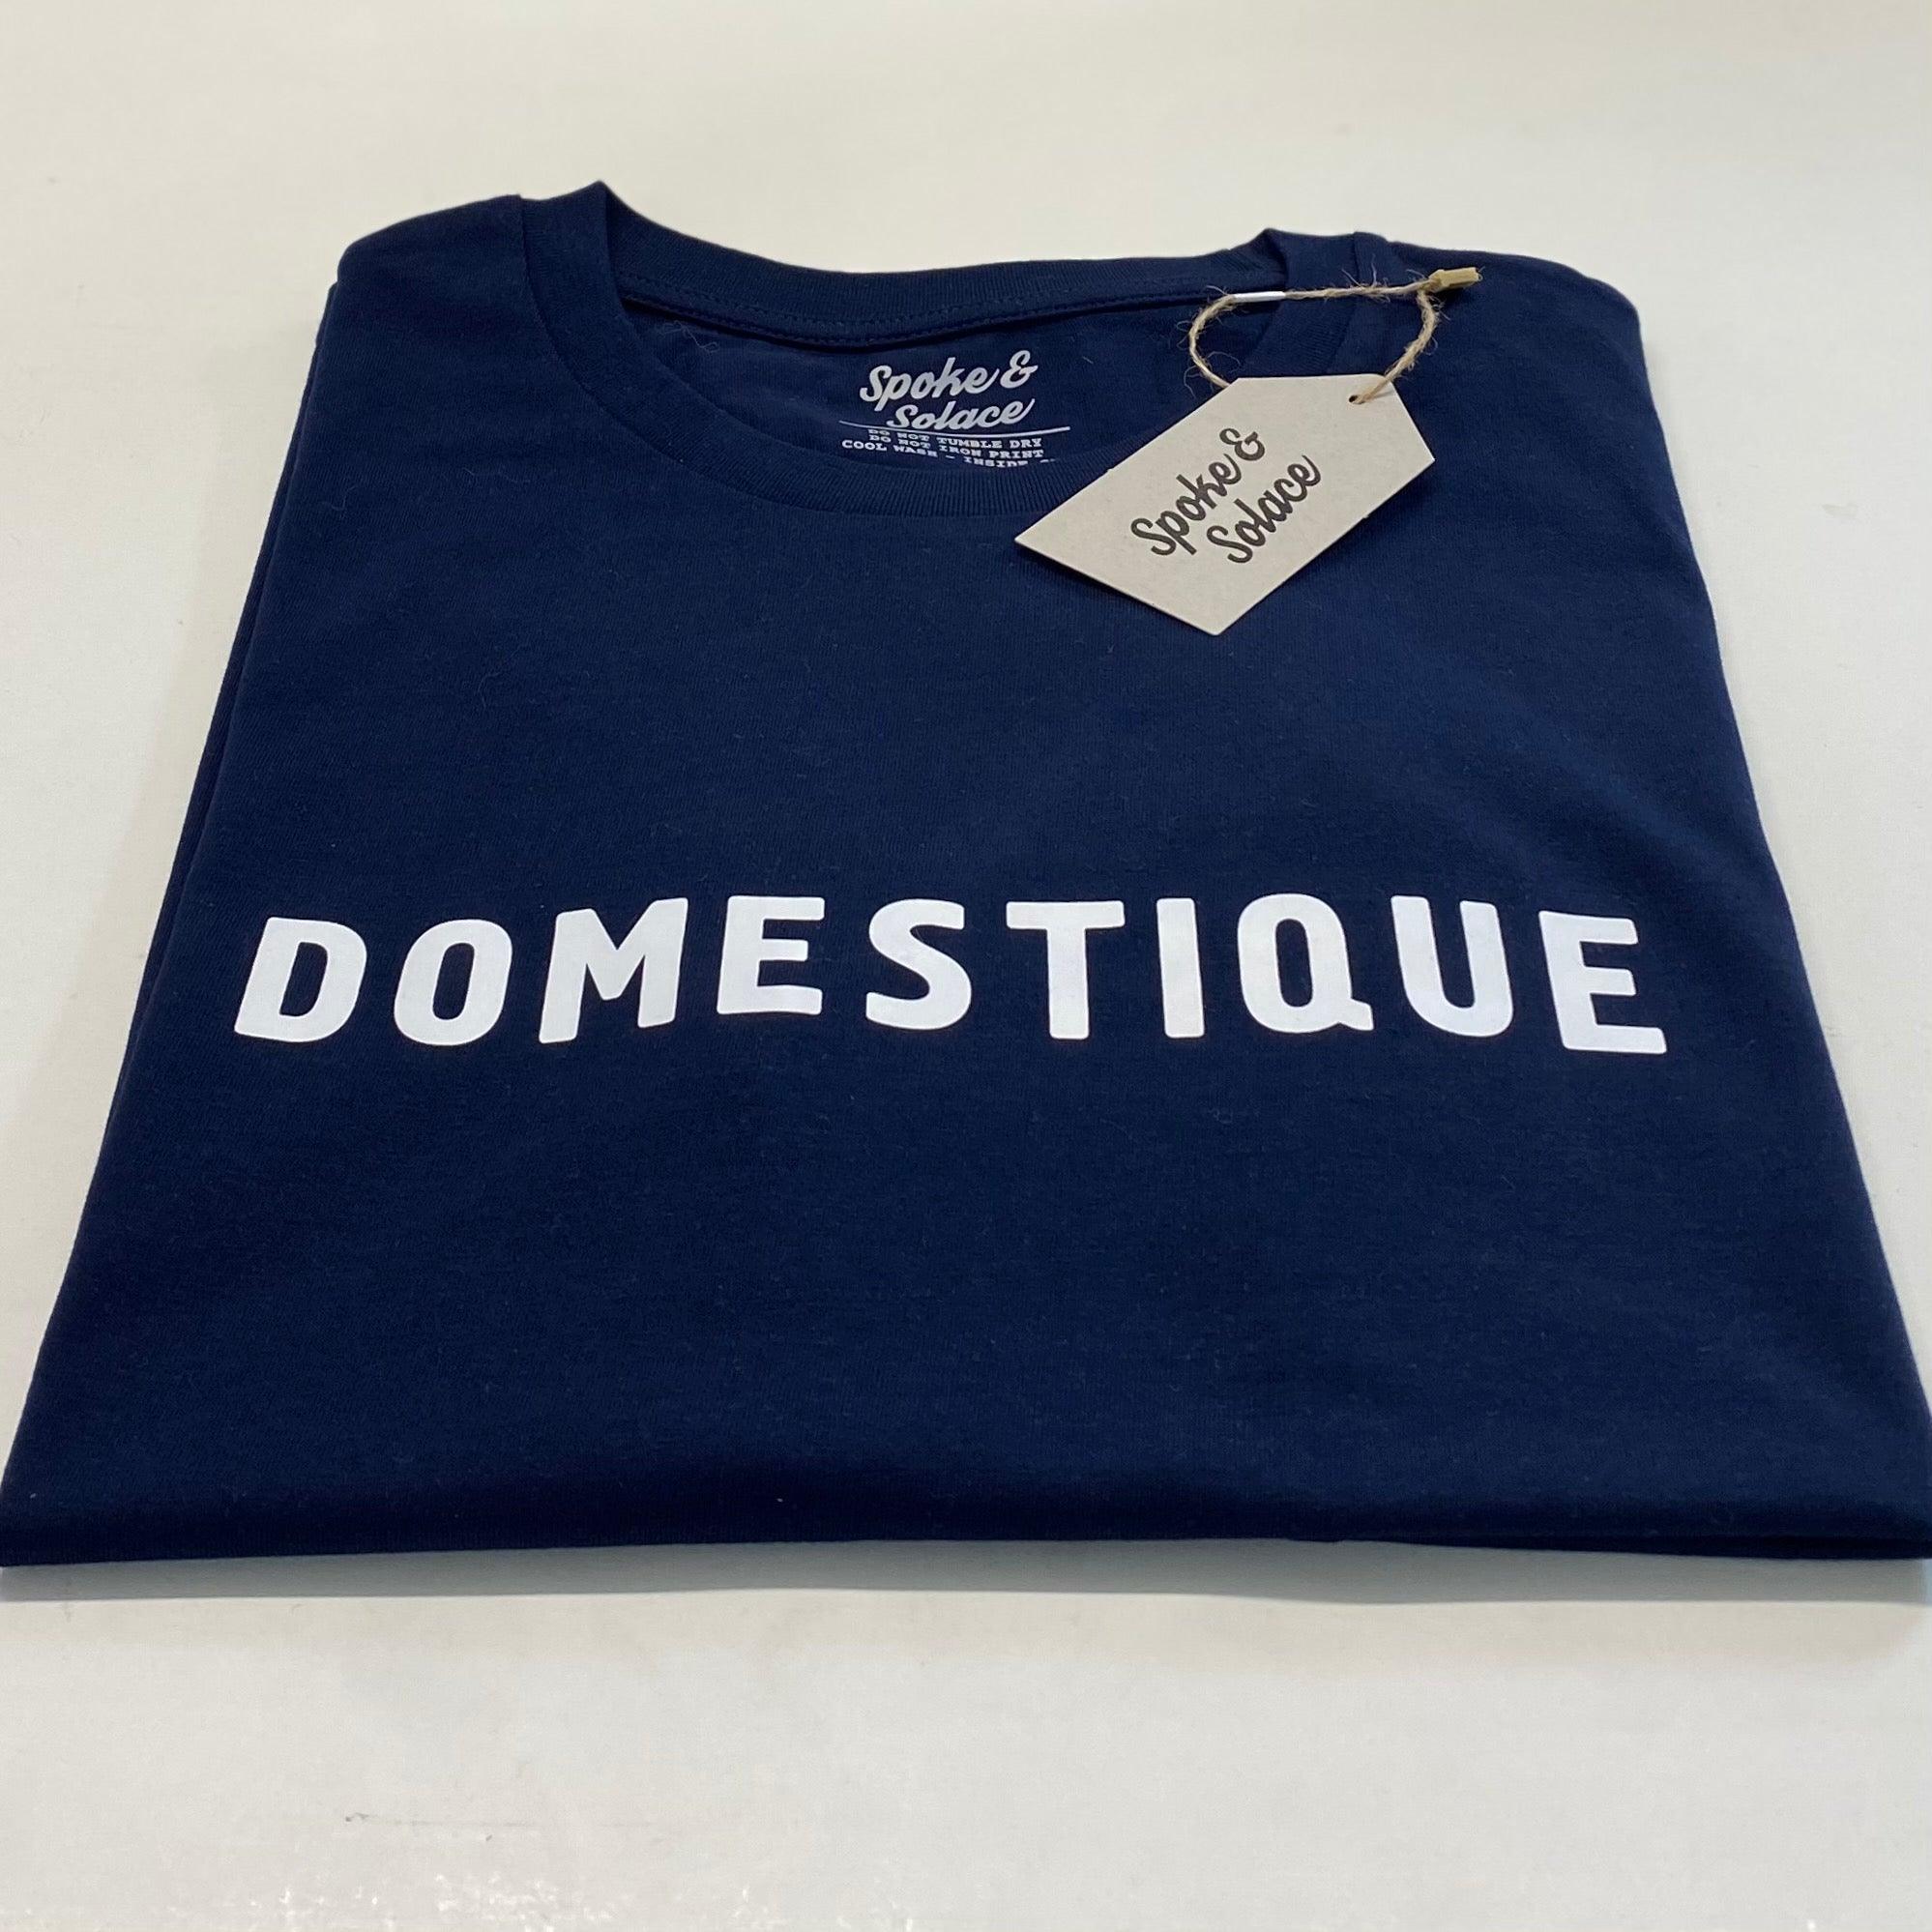 Domestique T-Shirt - Spoke & Solace